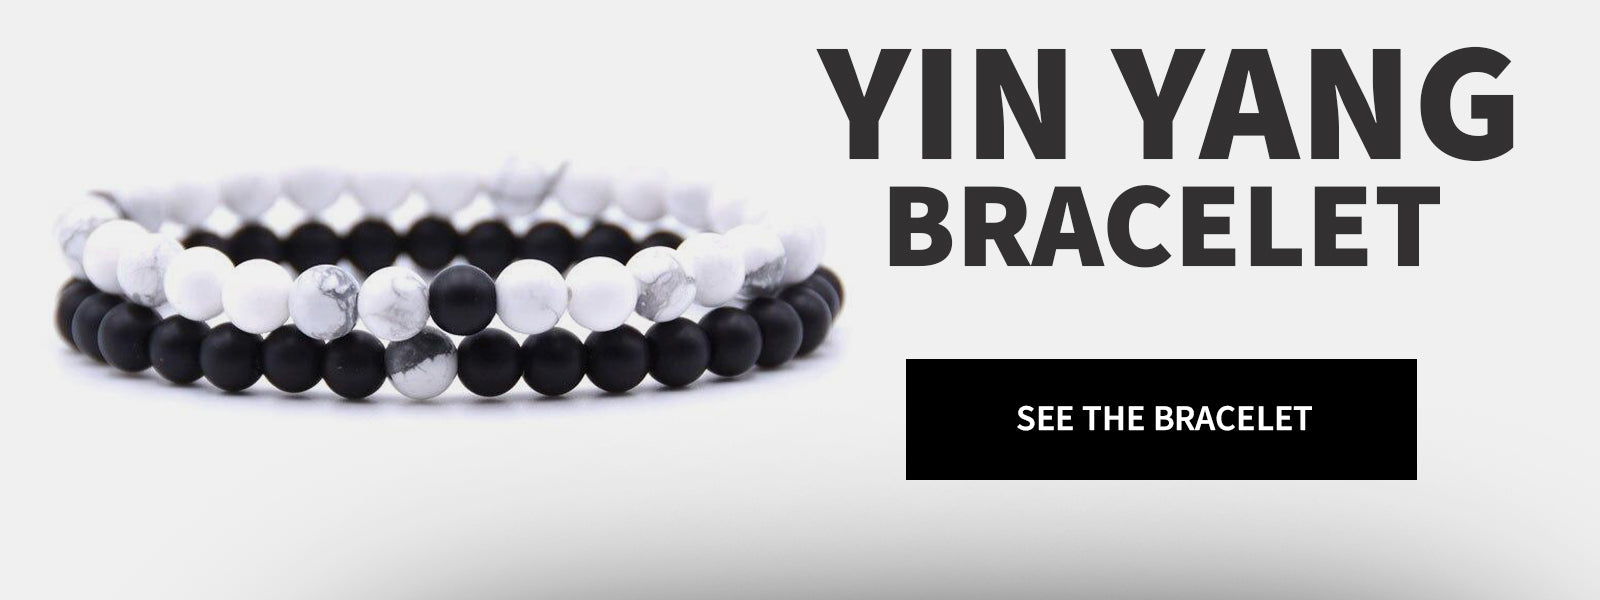 Buy Yin Yang bracelet, men's bracelet with Yin Yang charm, yoga bracelet,  chinese, zen, black cord, bracelet for men, gift for him, spiritual (Pack  of 1) at Amazon.in